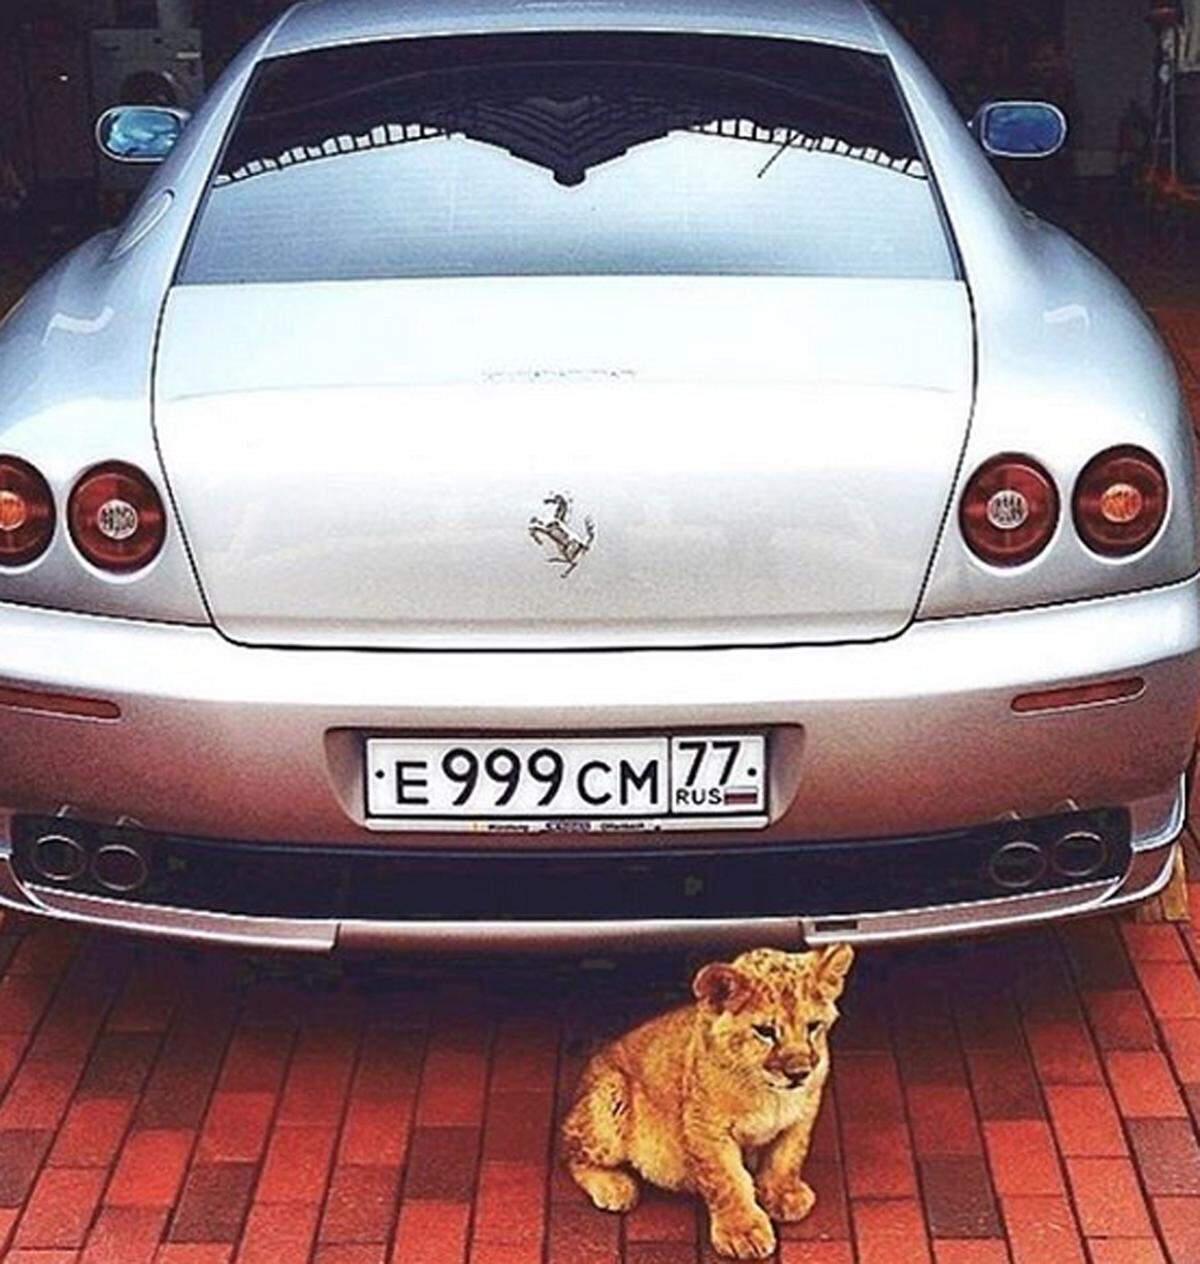 Neben dem Auto sind exotische Haustiere ein Statussymbol der jungen Russen. Löwenbabys etwa.